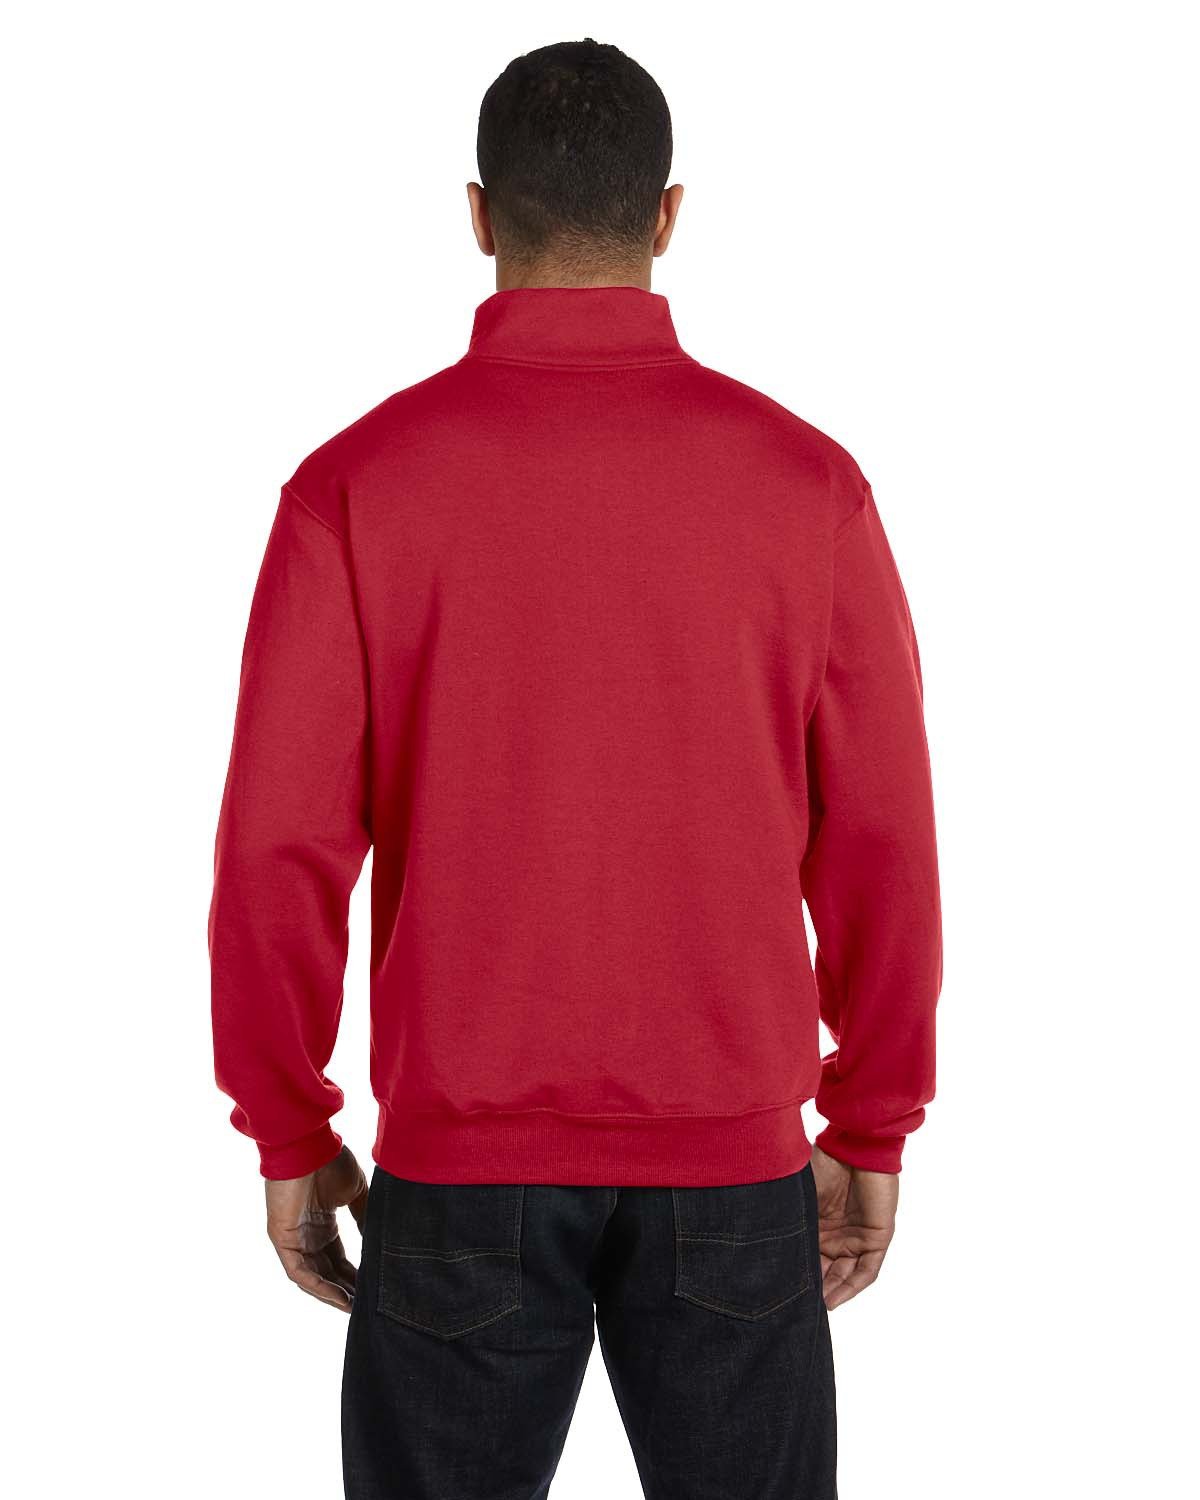 Jerzees Adult NuBlend® Quarter-Zip Cadet Collar Sweatshirt | US Generic ...